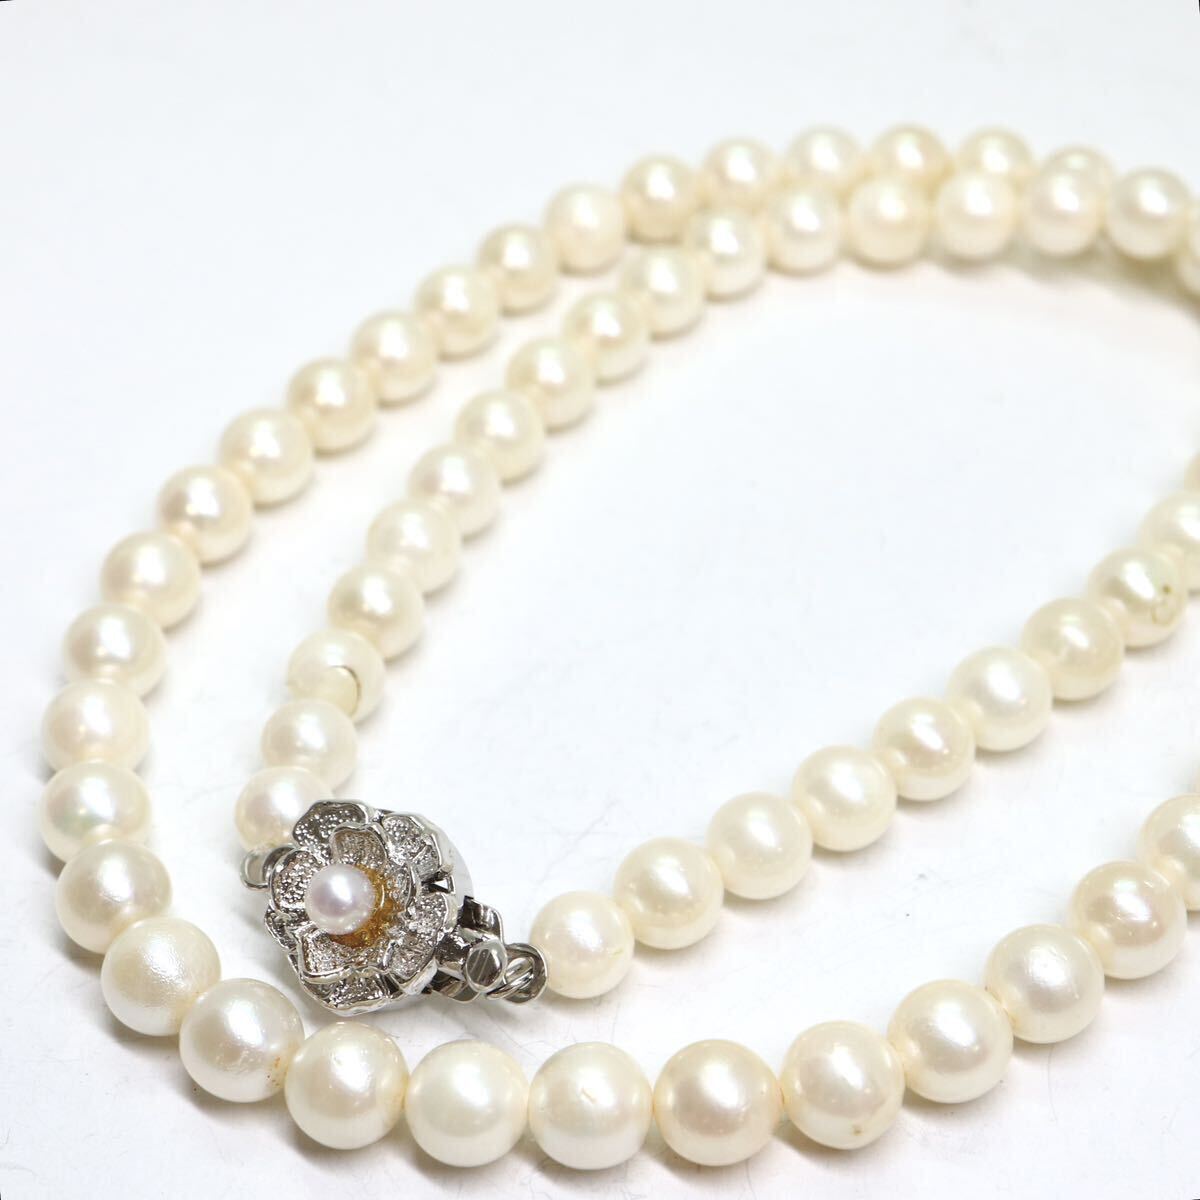 《アコヤ本真珠ネックレス》A 約5.5-6.0mm珠 21.8g 約41.5cm pearl necklace ジュエリー jewelry DA0/DC0の画像1